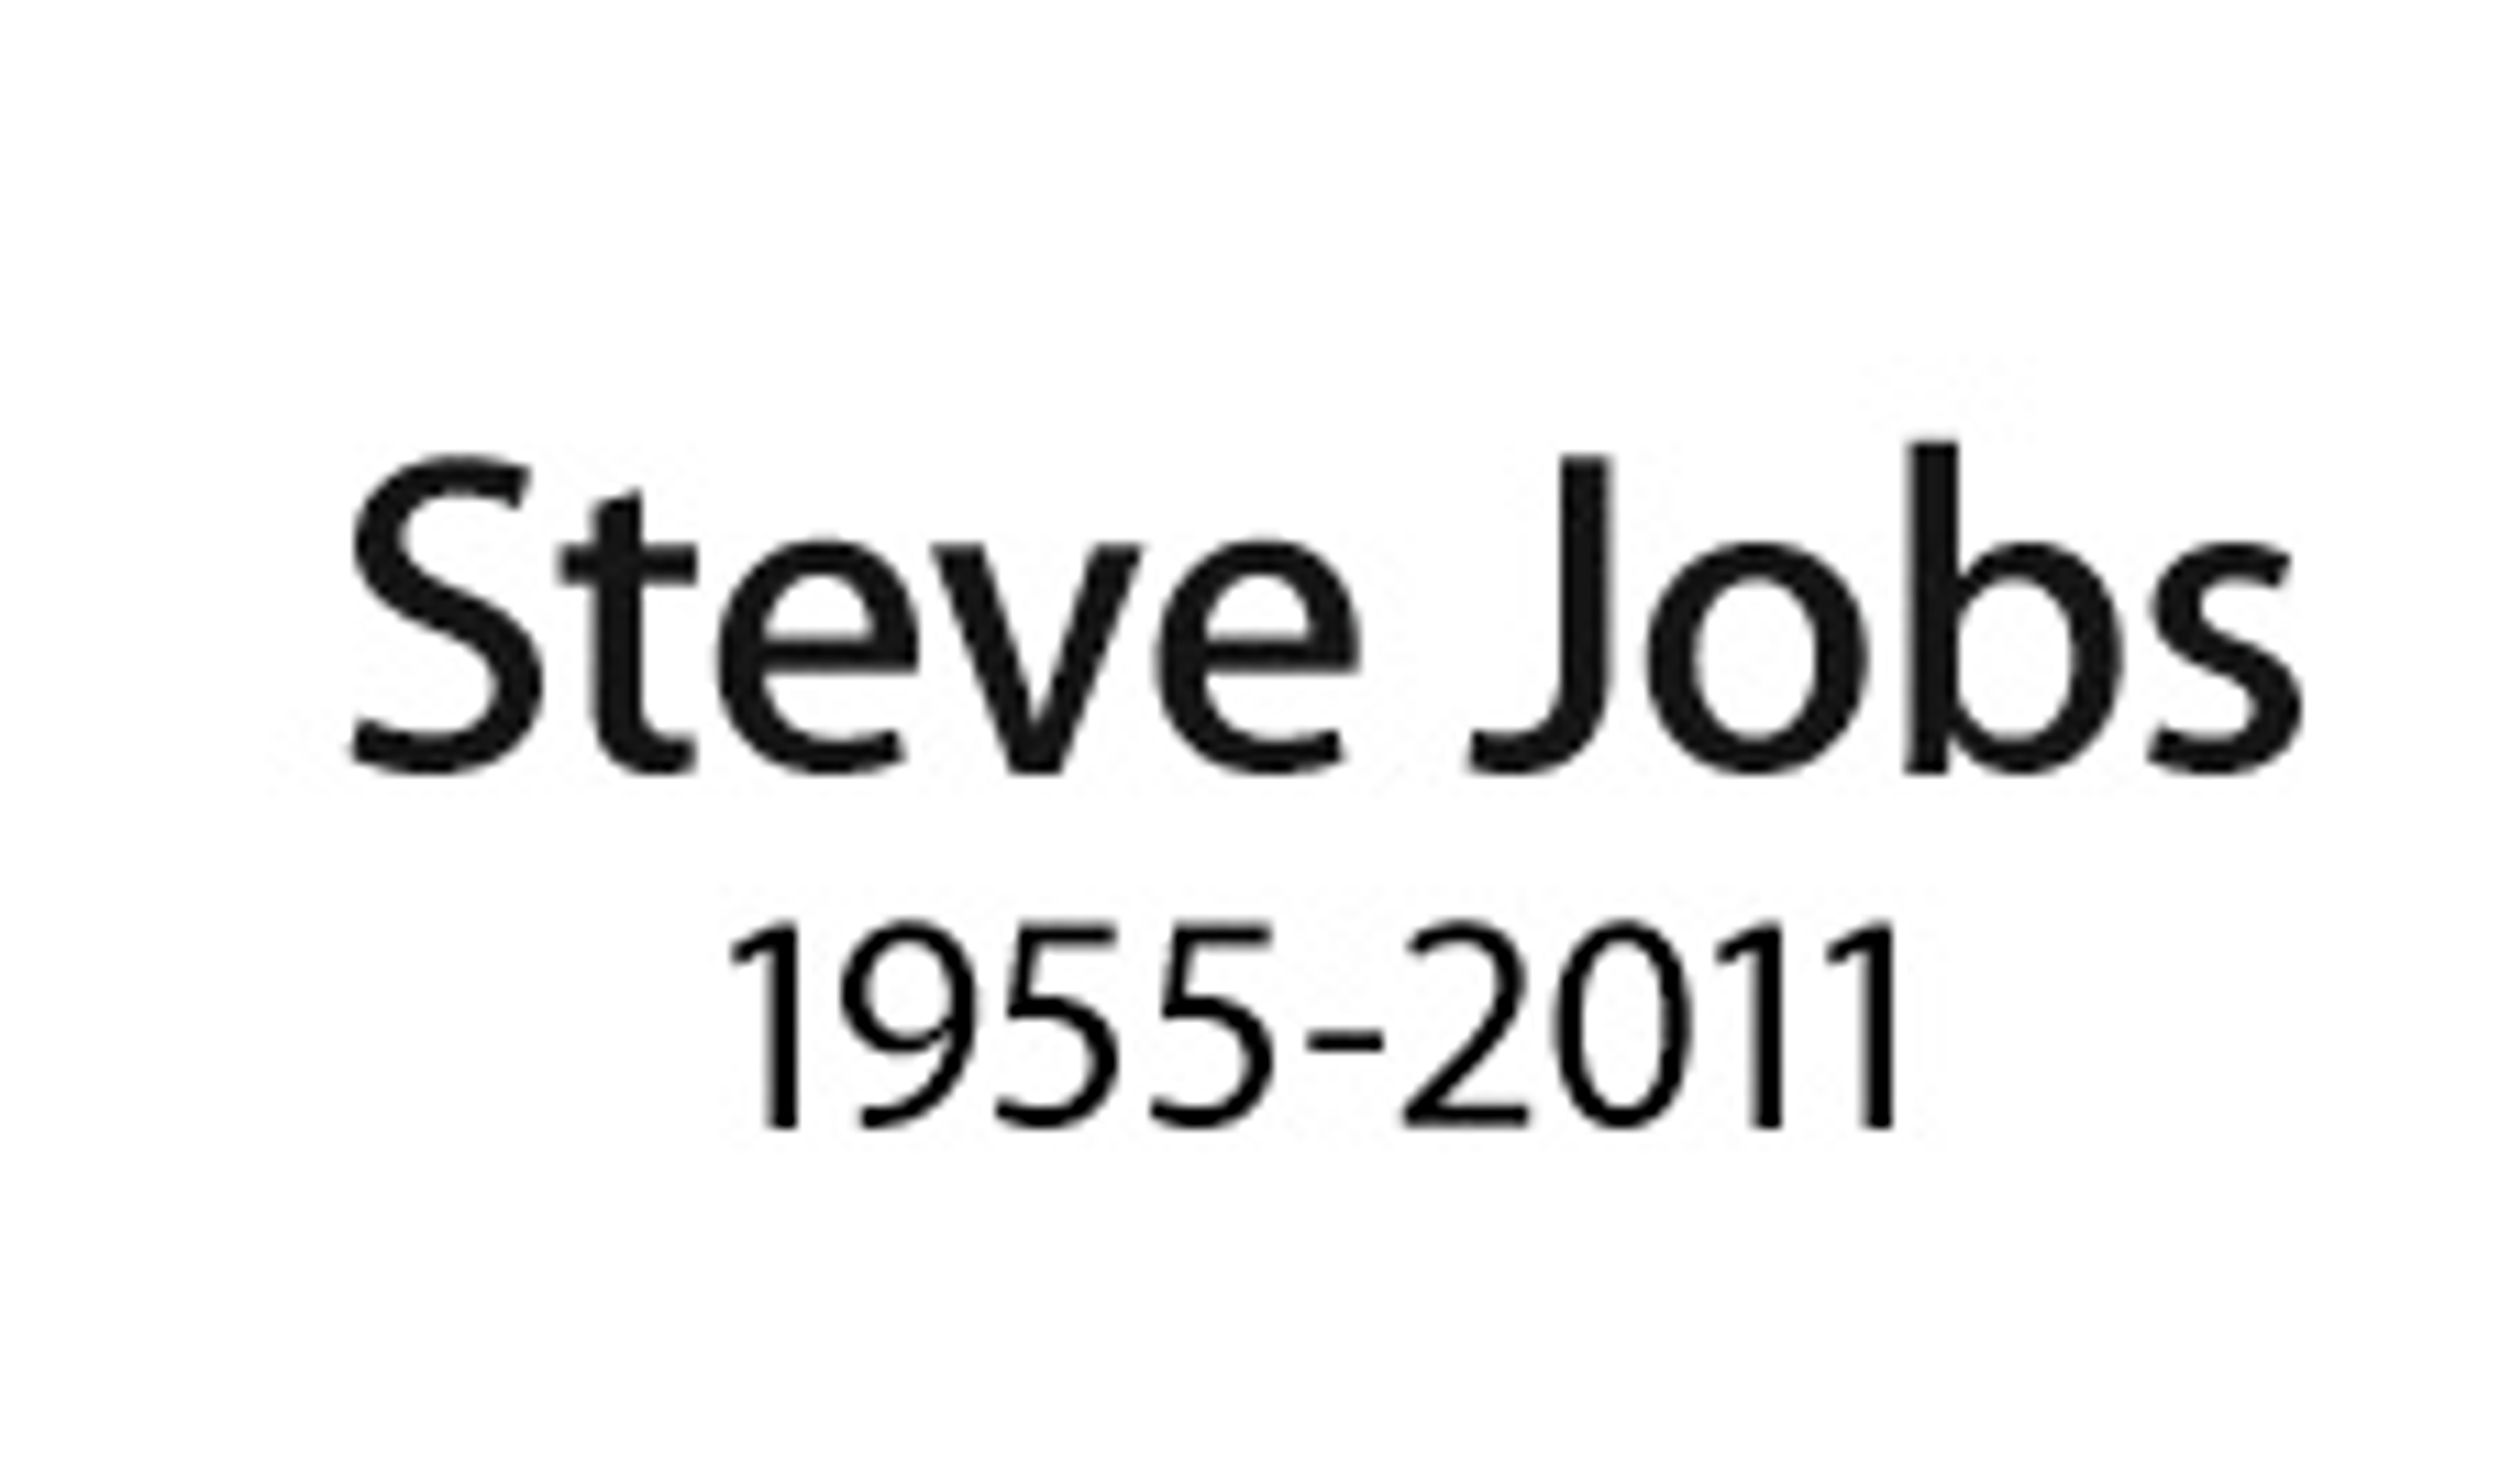 Steve Jobs Has Died